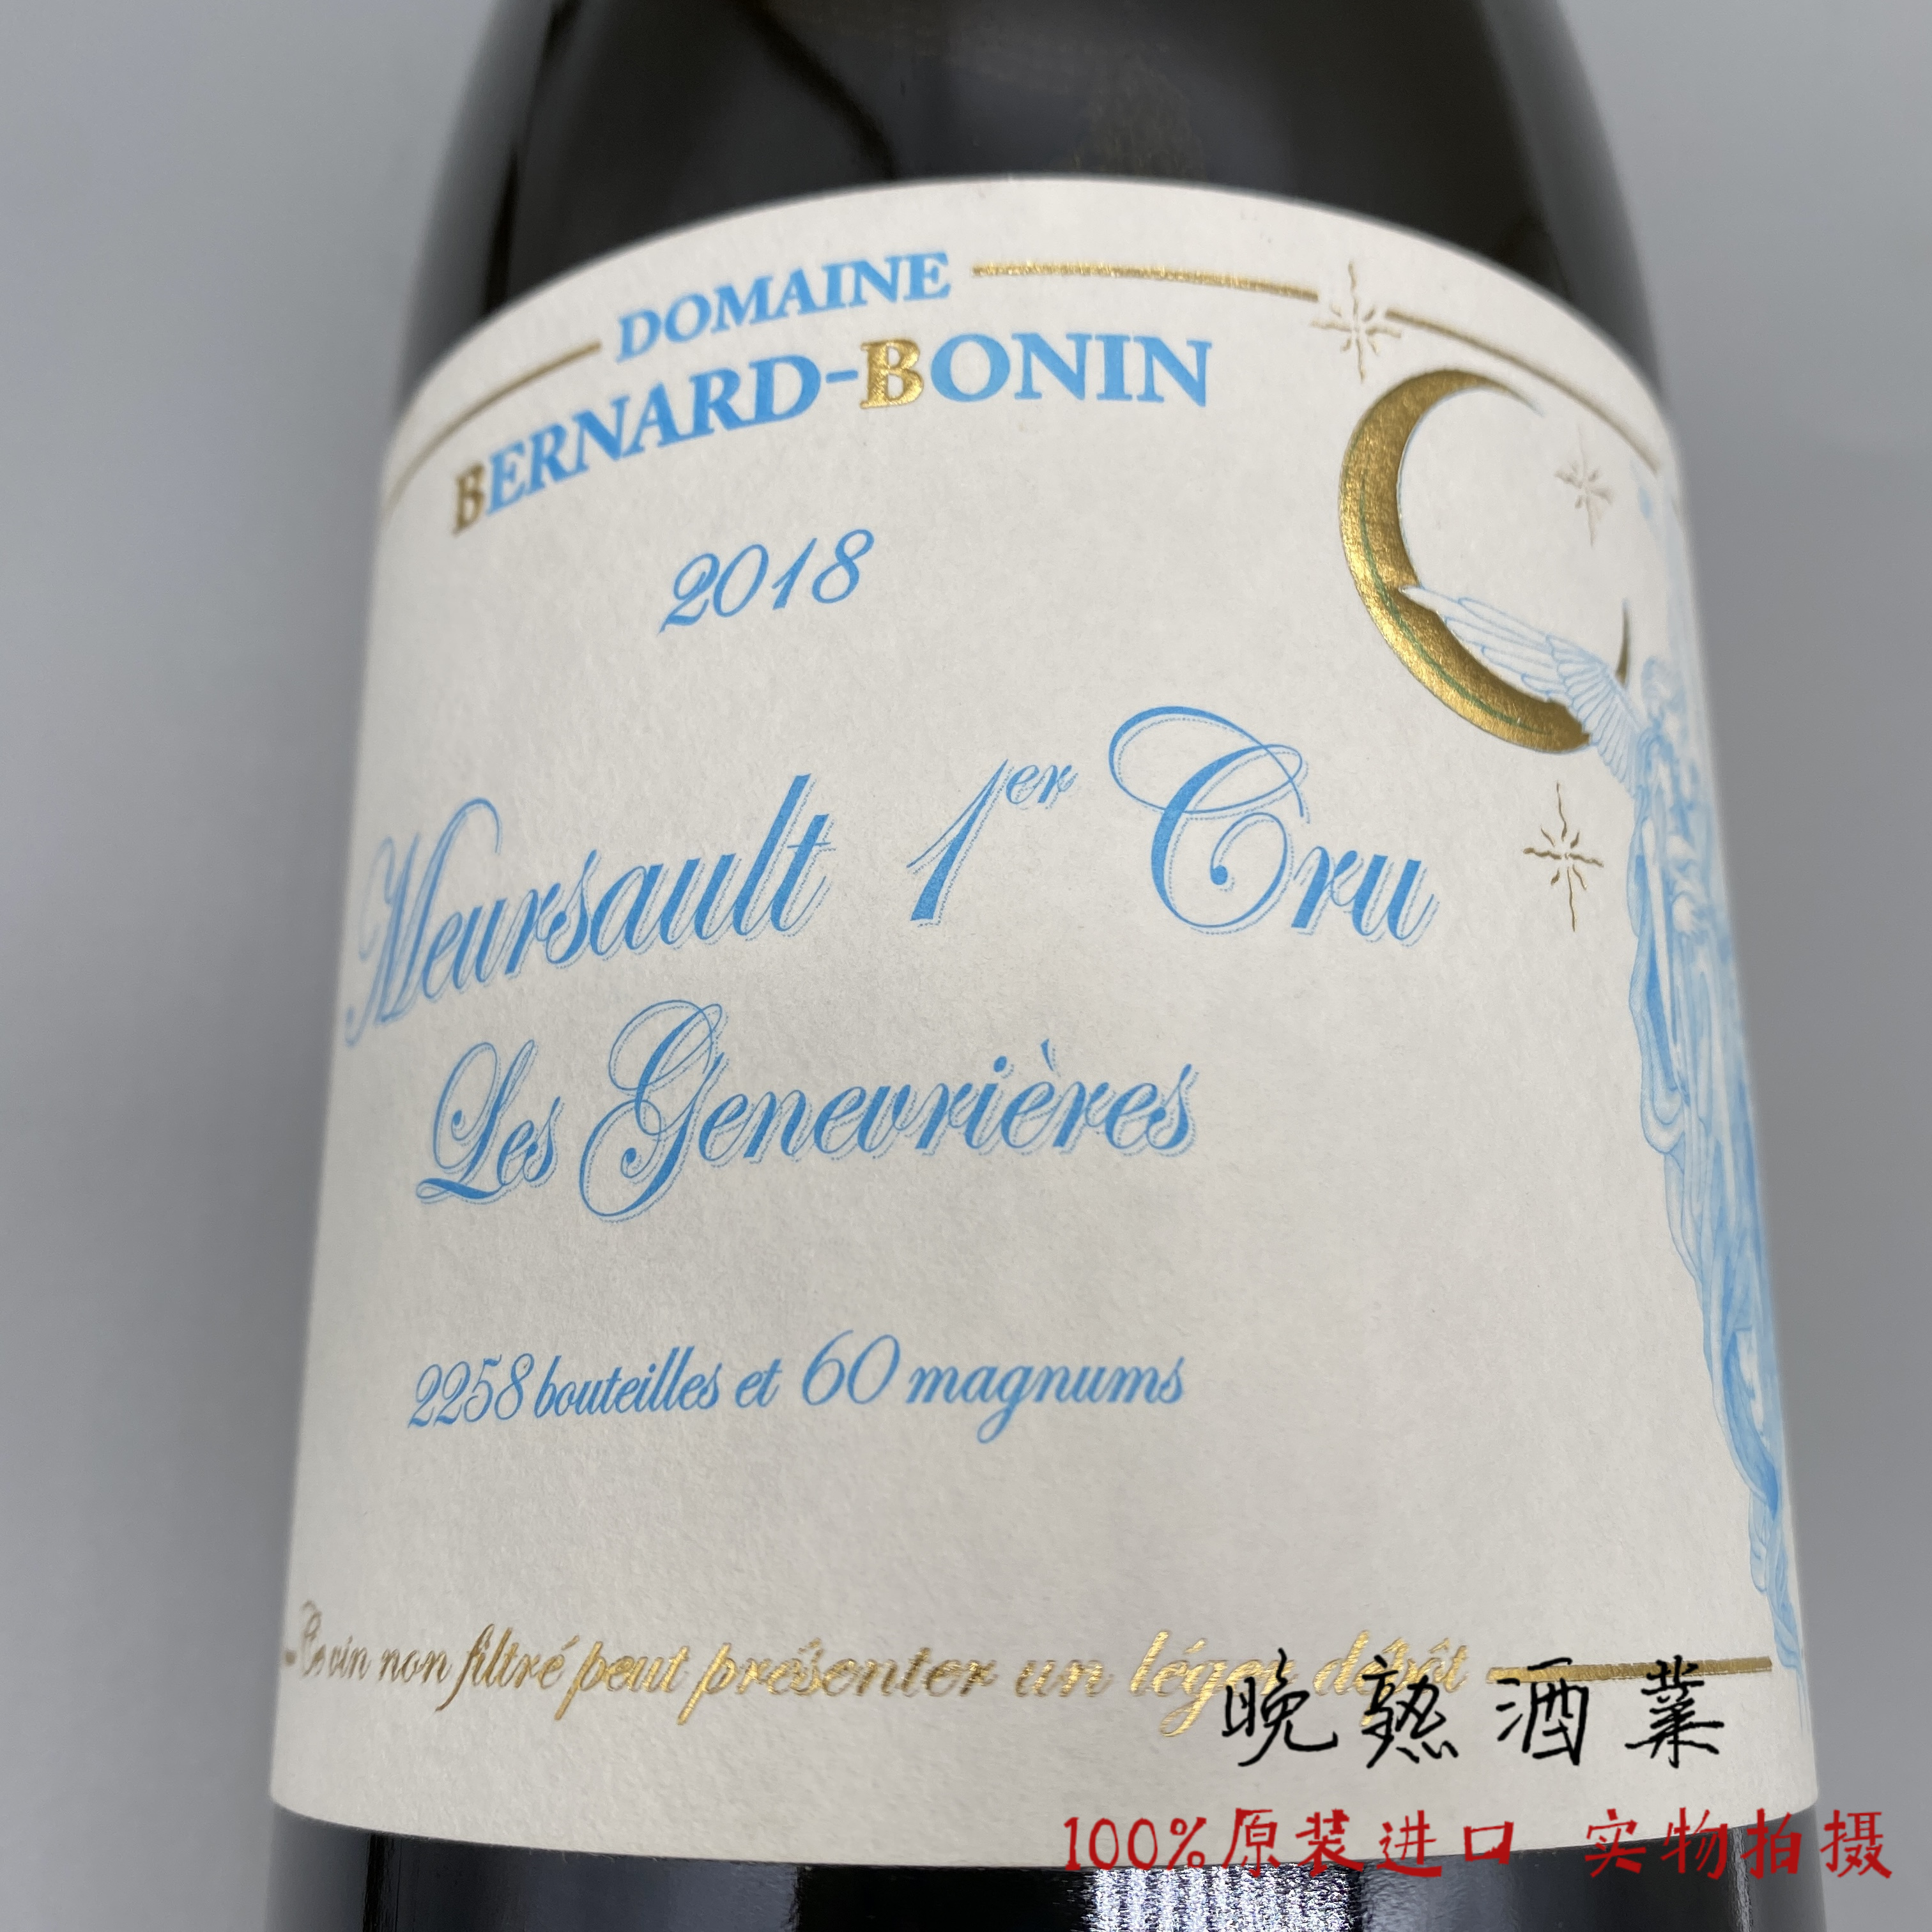 Bernard-Bonin 伯纳德博宁酒庄热那弗耶园默尔索一级园干白葡萄酒